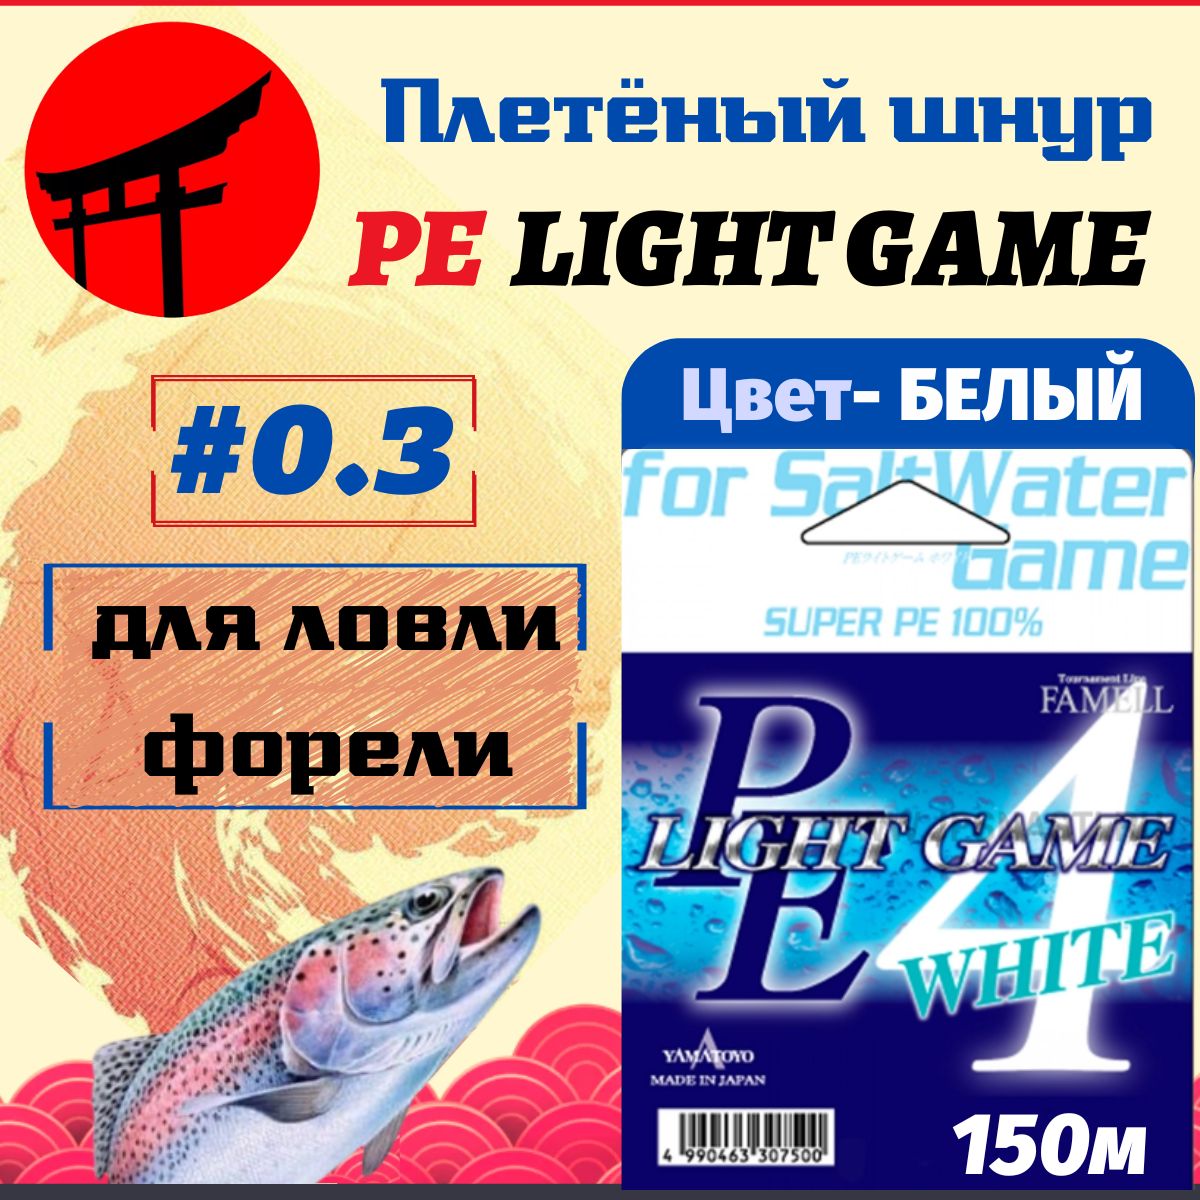 Плетеный шнур Yamatoyo pe Light game White. Yamatoyo pe Light game White. Yamatoyo. Yamatoyo light game